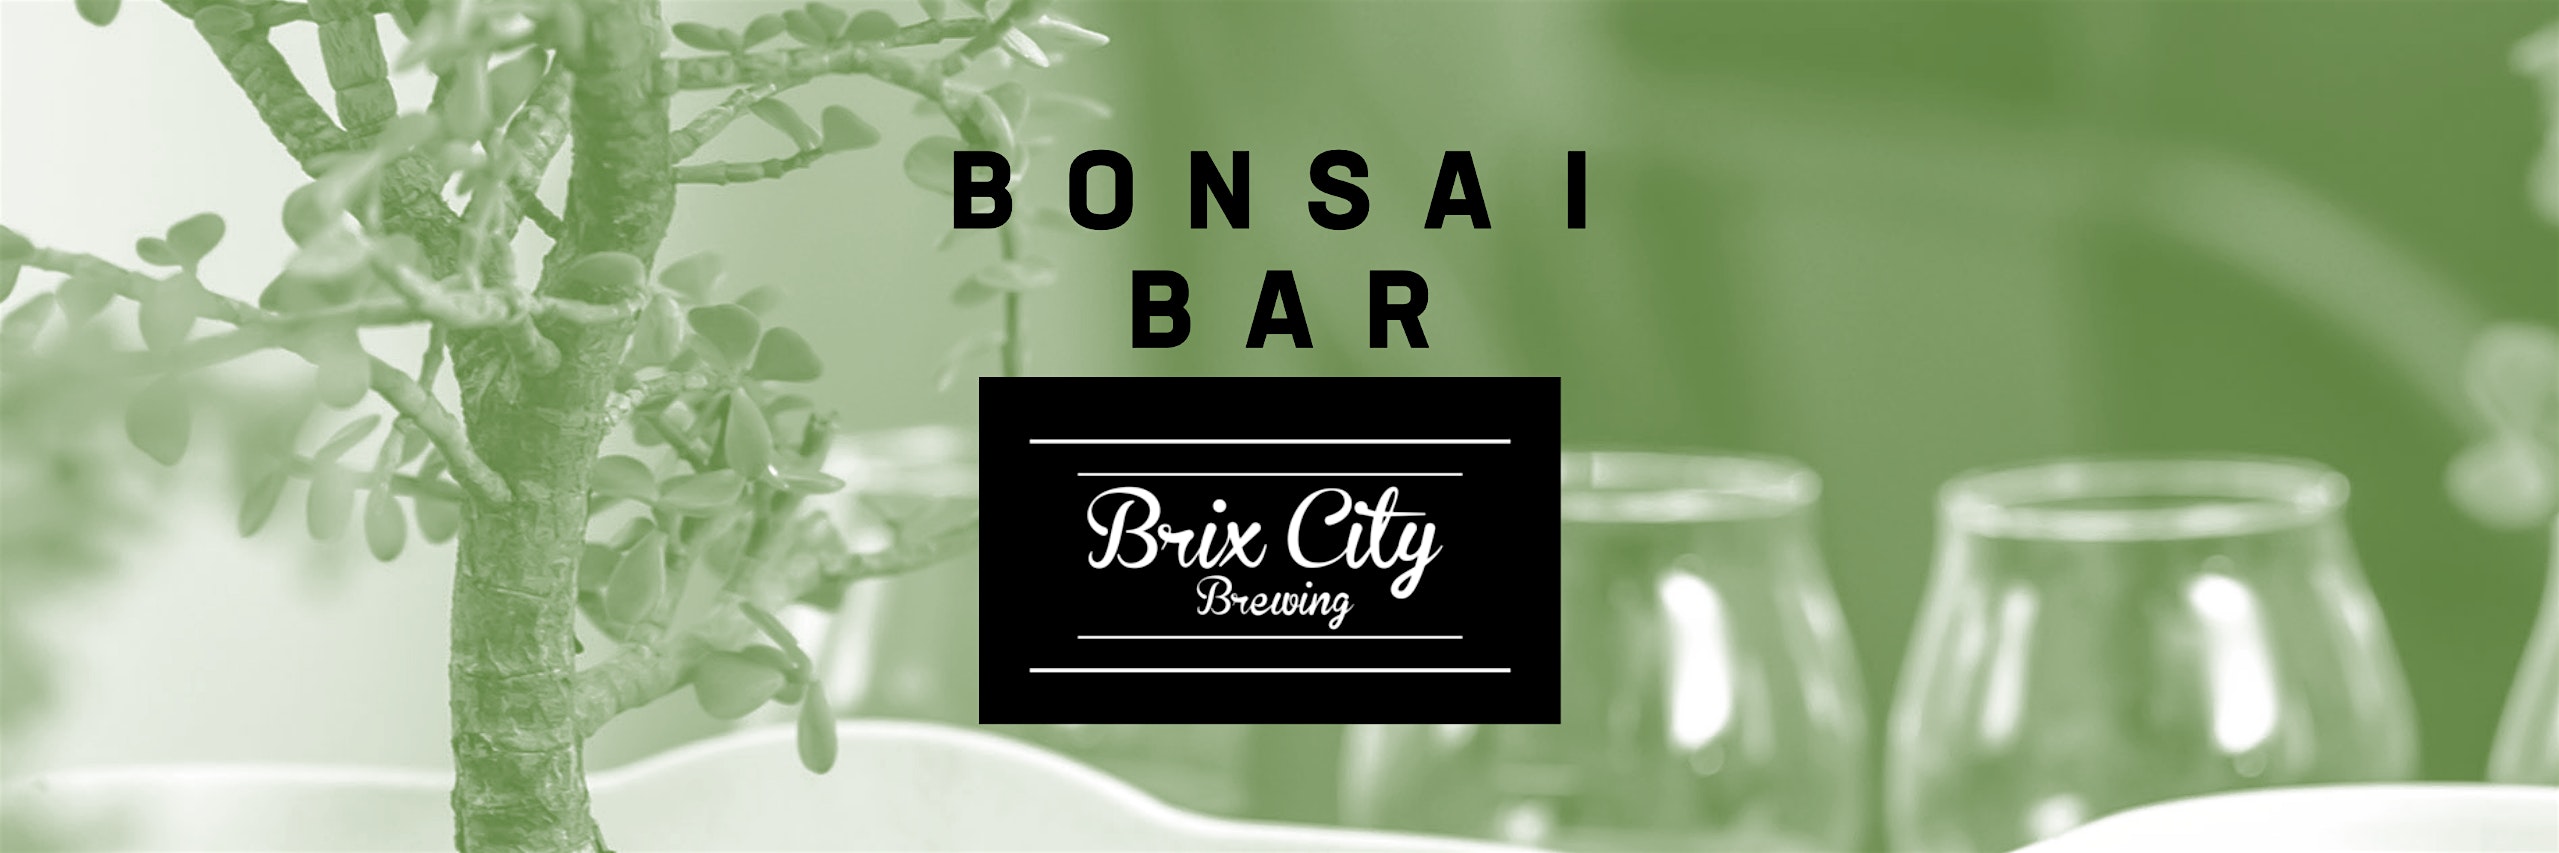 Bonsai Bar @ Brix City Brewing